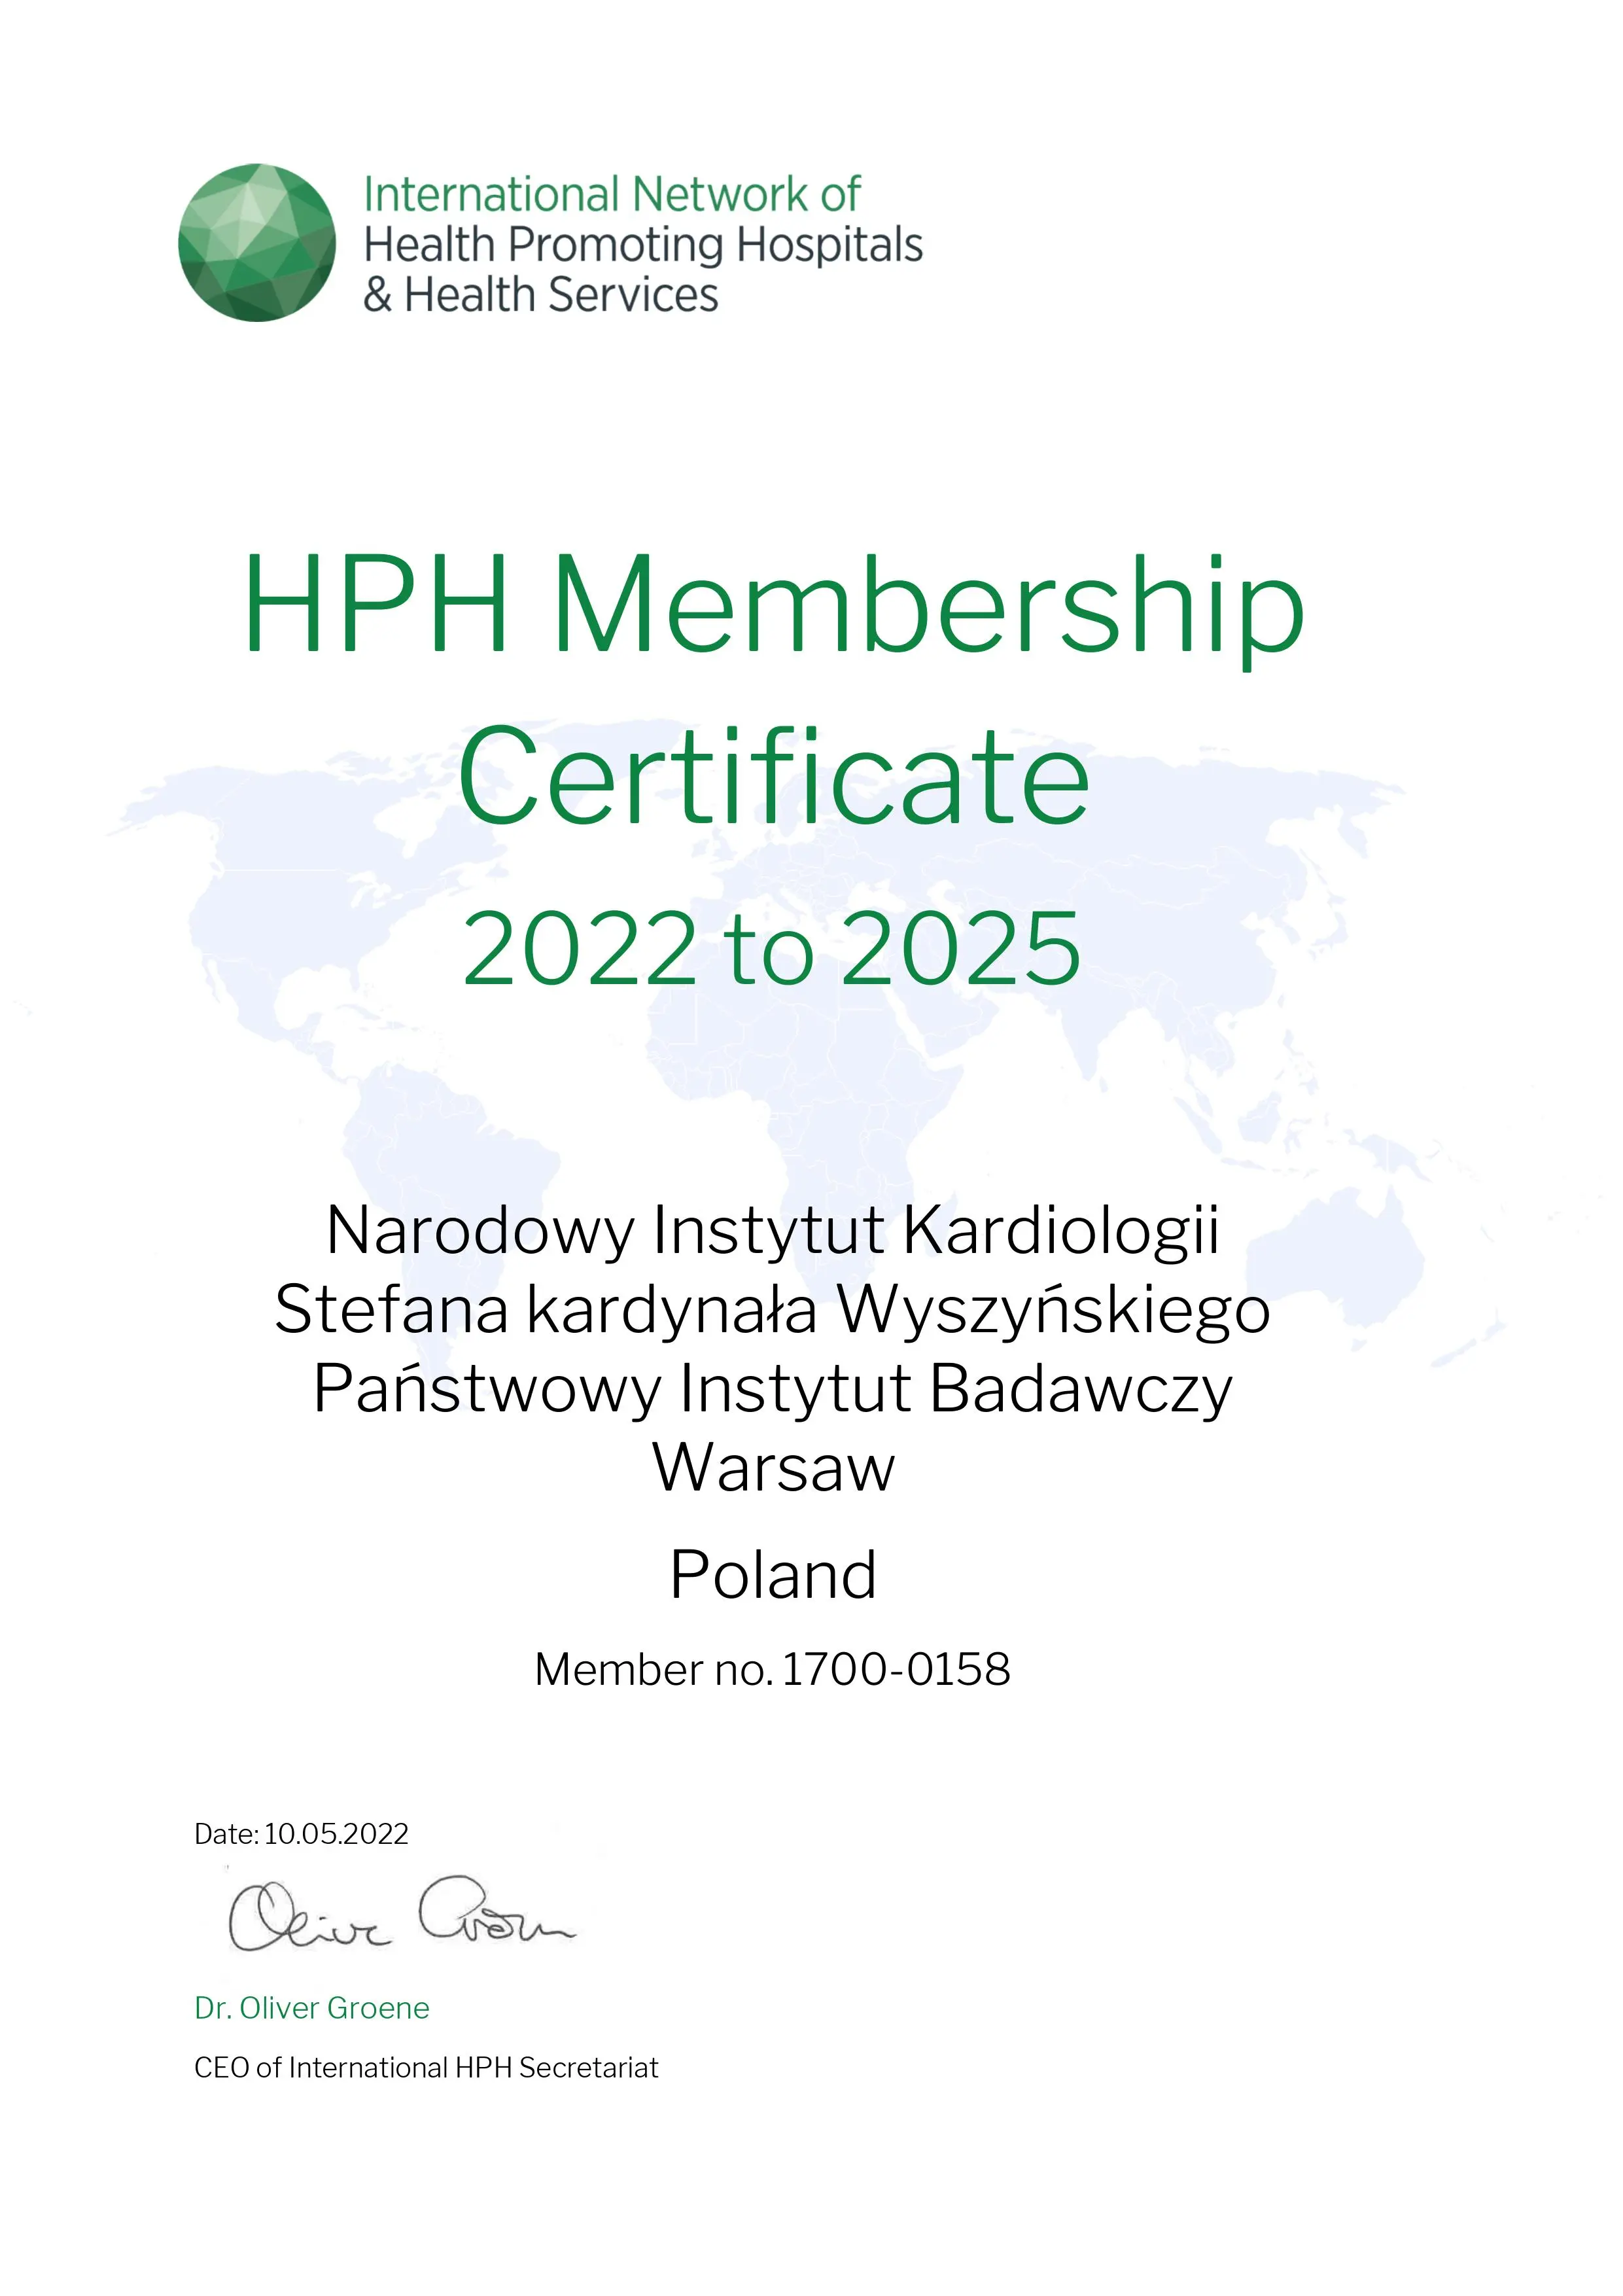 Certyfkat HPH Membership Certificate 2017-2020